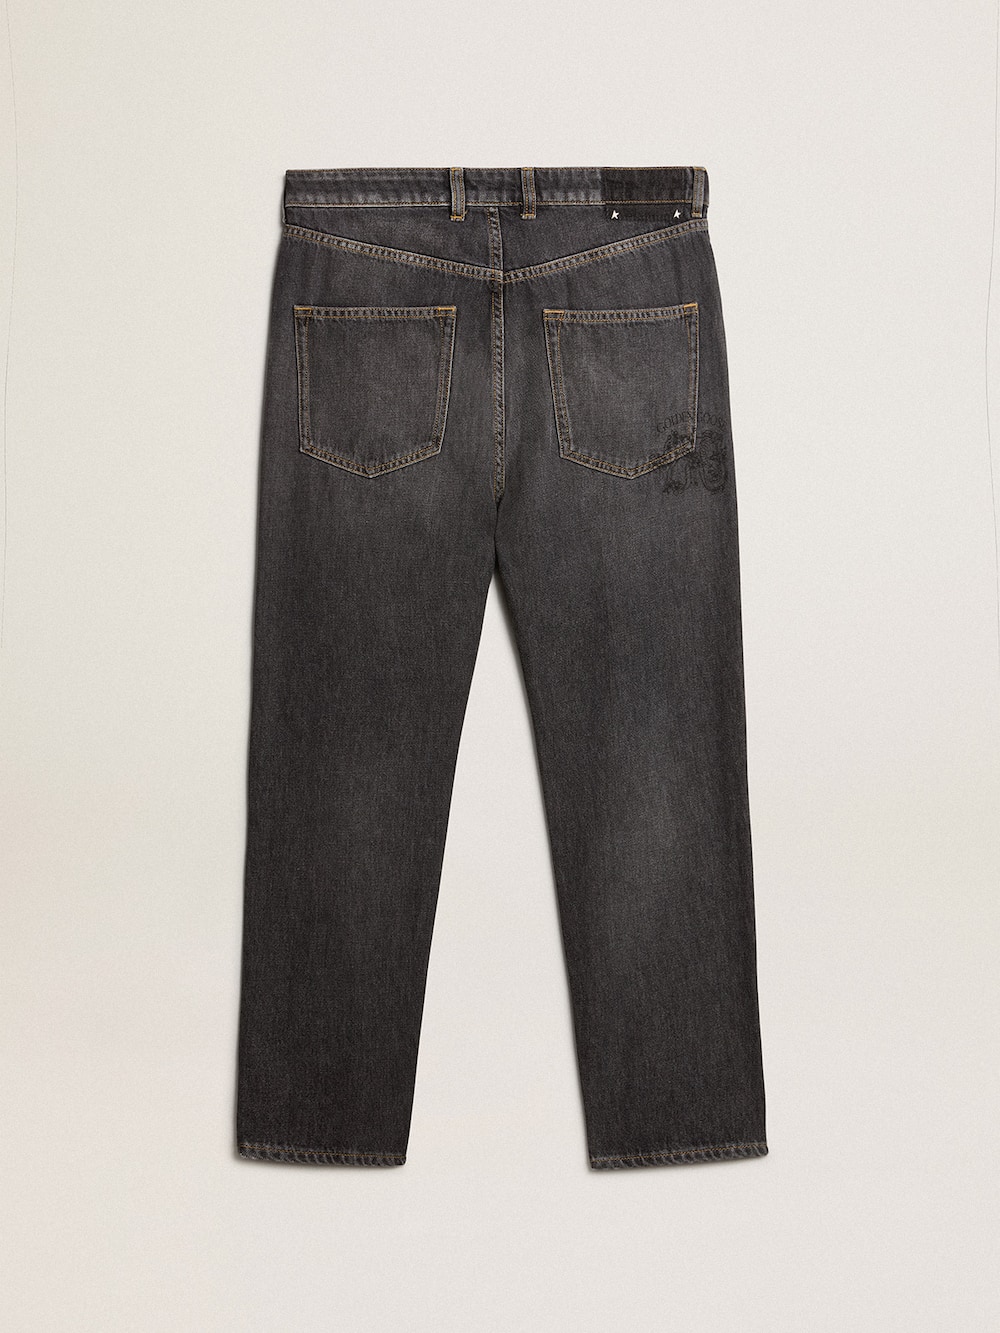 Golden Goose - Men’s black jeans with printed pocket in 